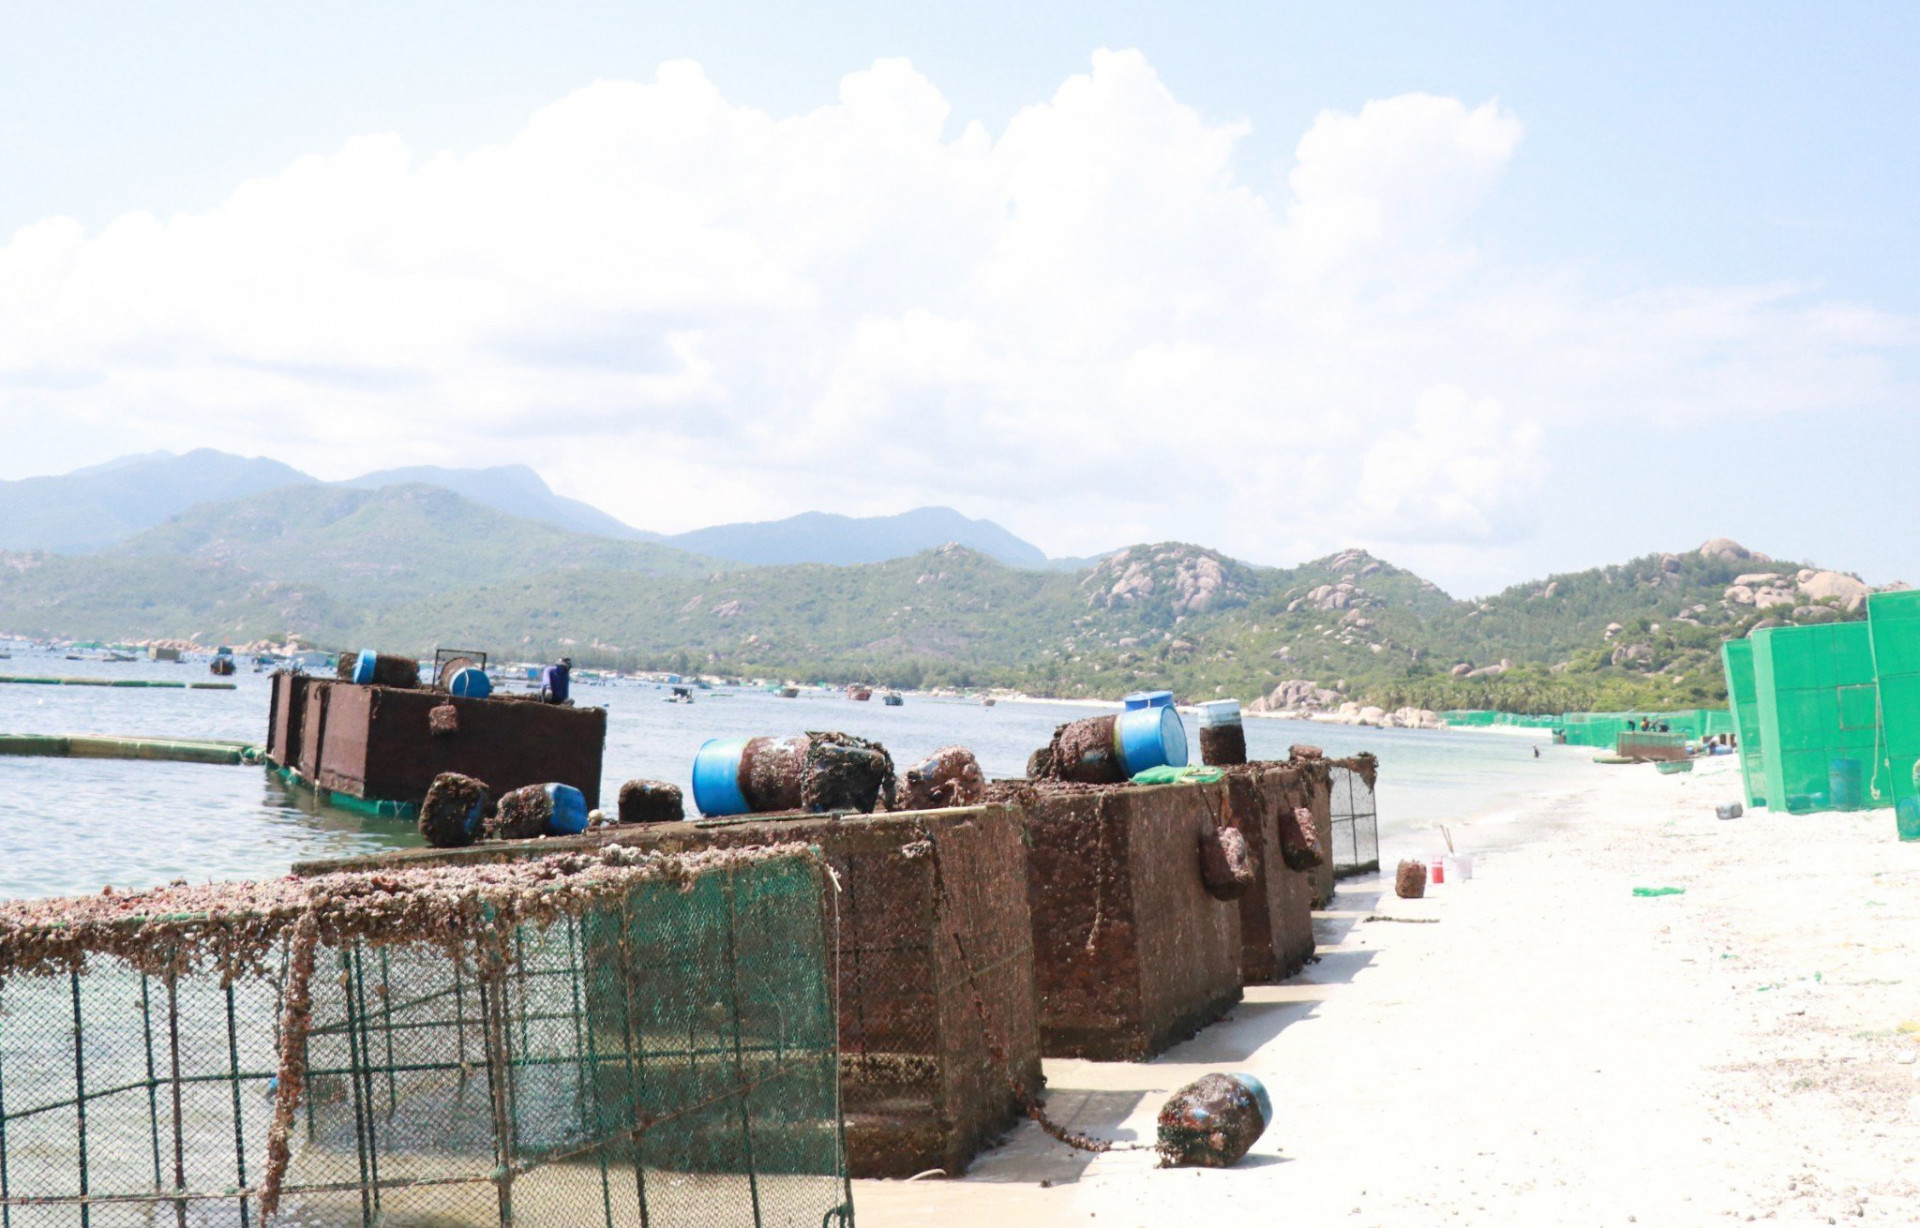 Lồng nuôi thủy sản được người dân kéo vào bờ để vệ sinh sau vụ nuôi